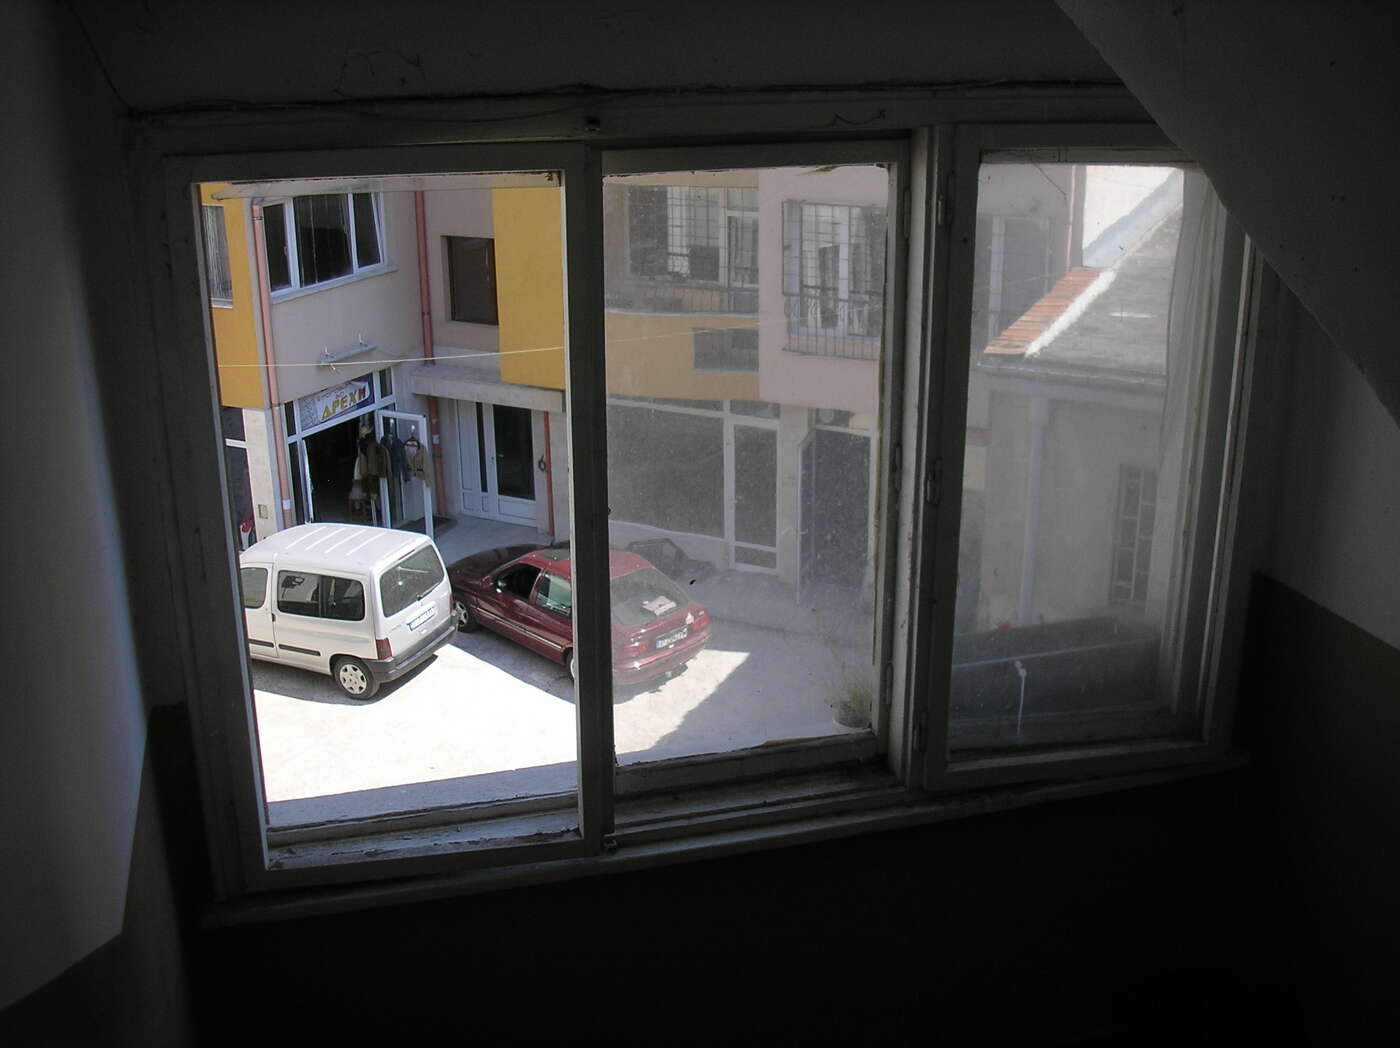 Treppenhaus - links fehlt die Fensterscheibe